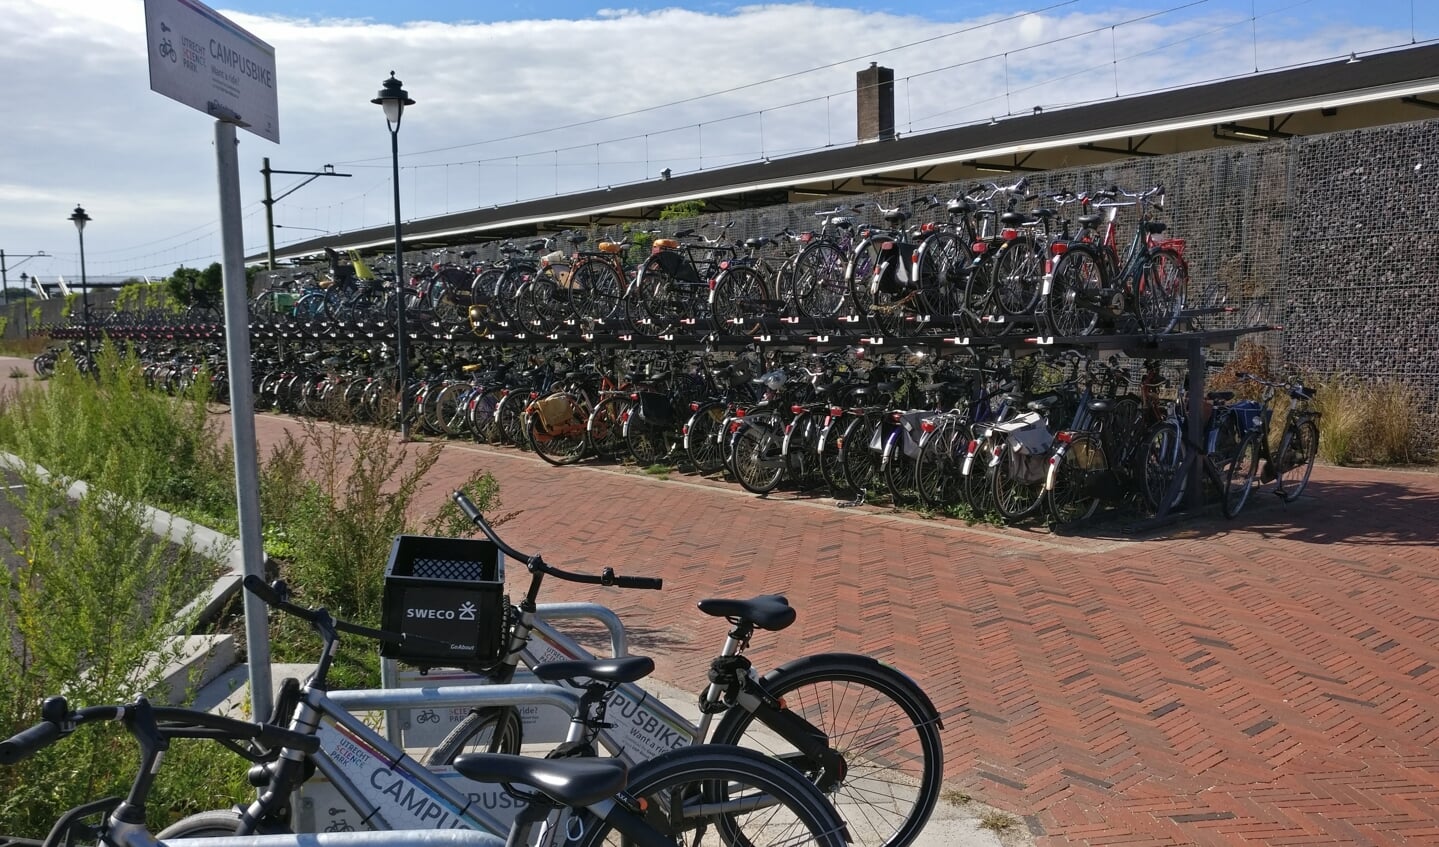 Ook bij station Bilthoven staan de Campus bikes separaat van de overige fietsen.